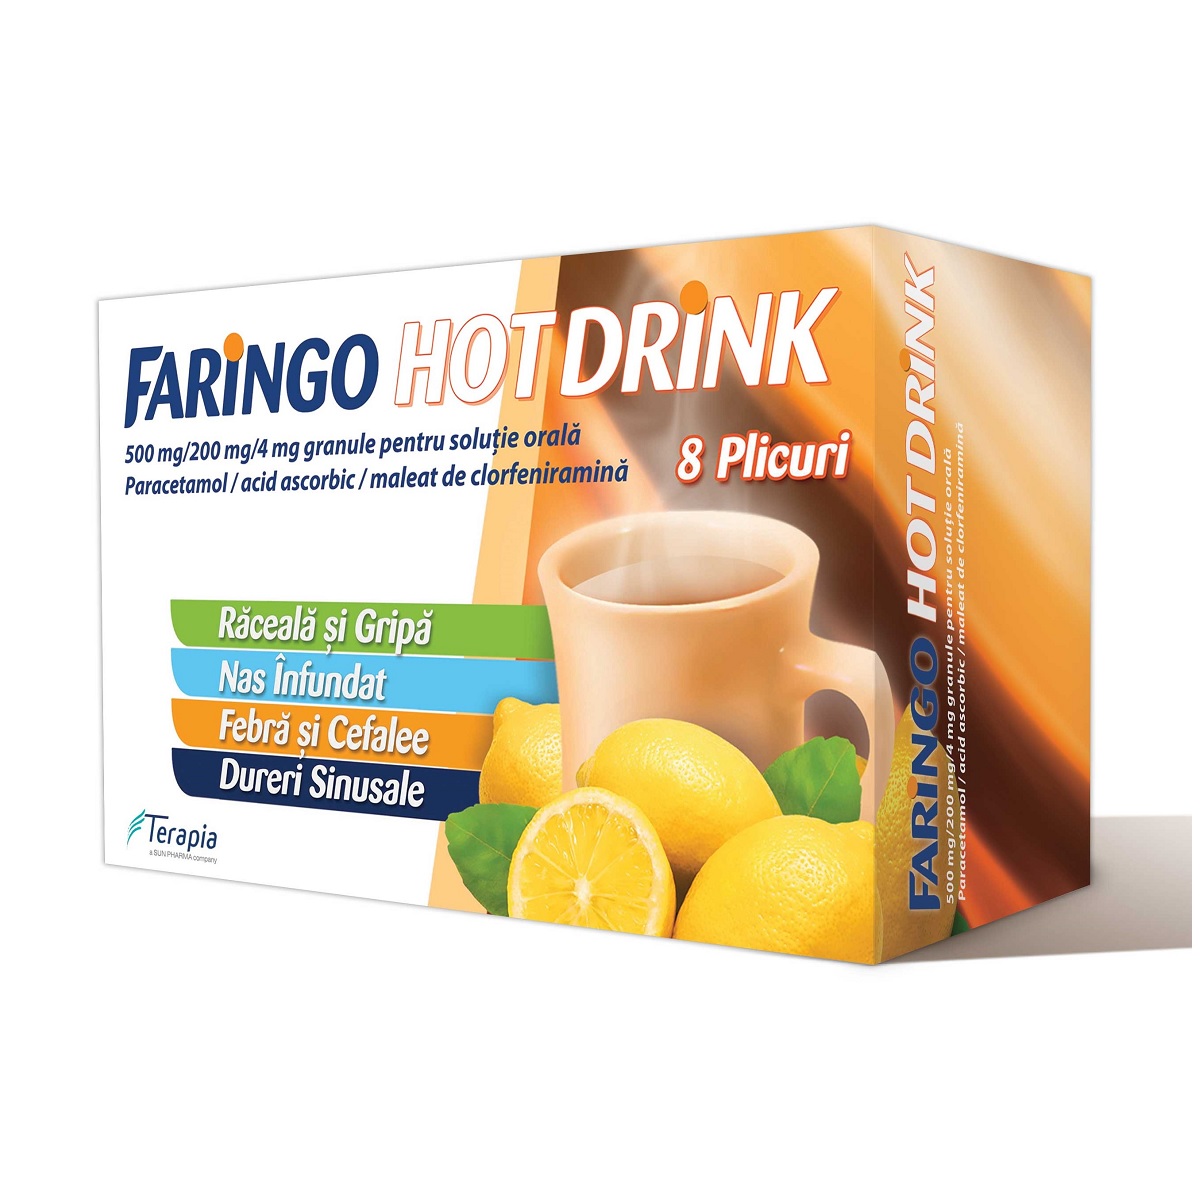 OTC - medicamente fara reteta - Faringo Hot drink x 8 plicuri, medik-on.ro